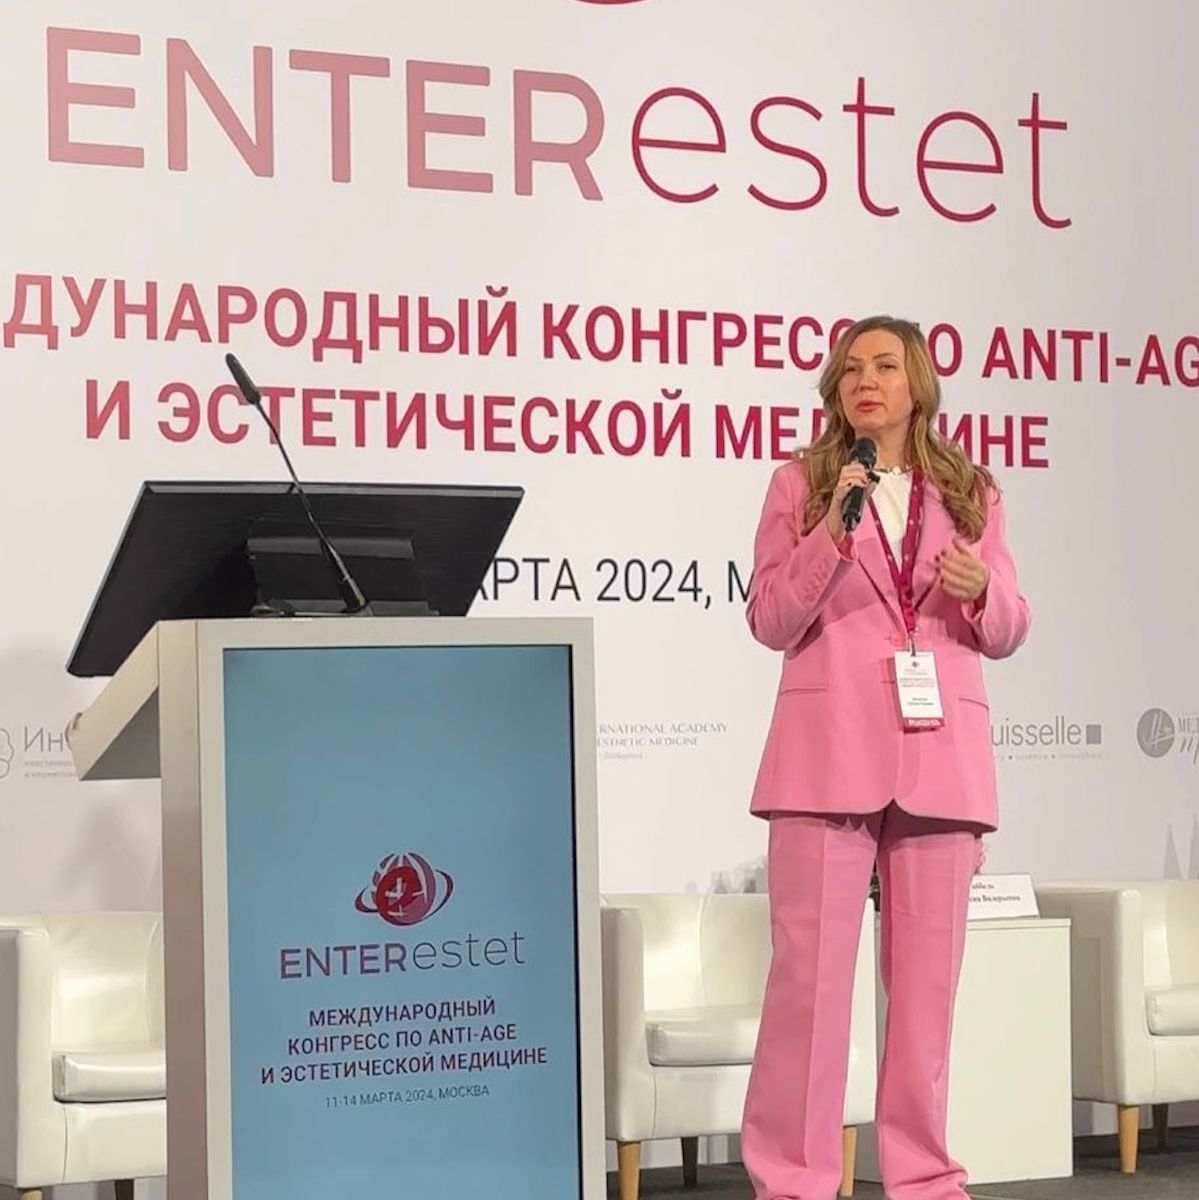 Международный конгресс по anti-age и эстетической медицине ENTERESTET 2024